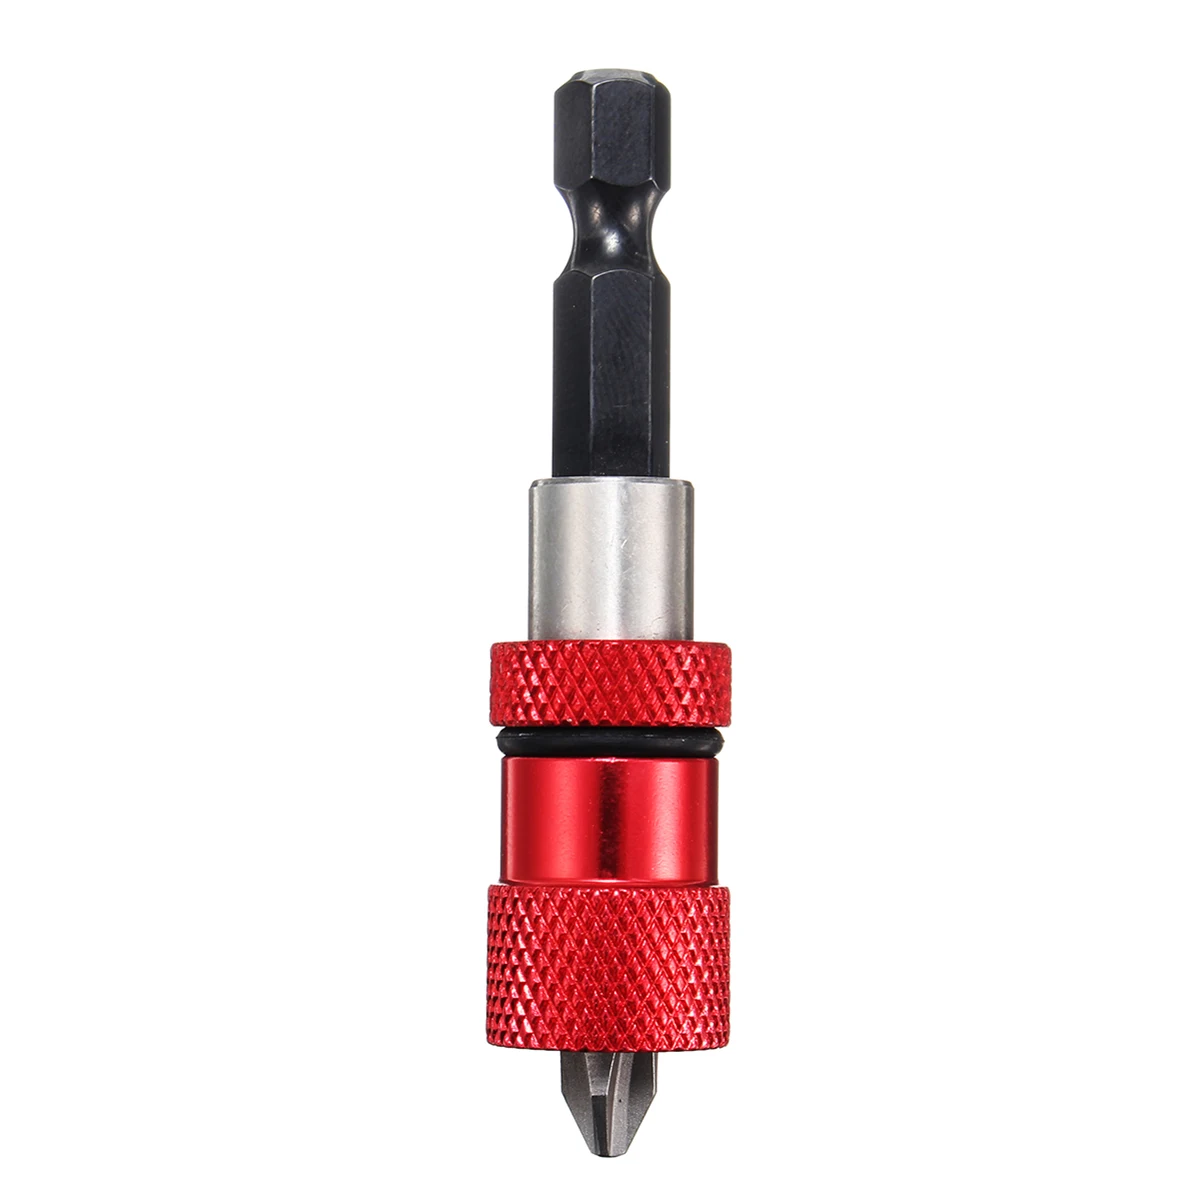 Хвостовик Ферромагнетик гипсокартон держатель бит головка для дрели инструмент 1/" хвостовик набор электрических отверток сверла - Цвет: Красный